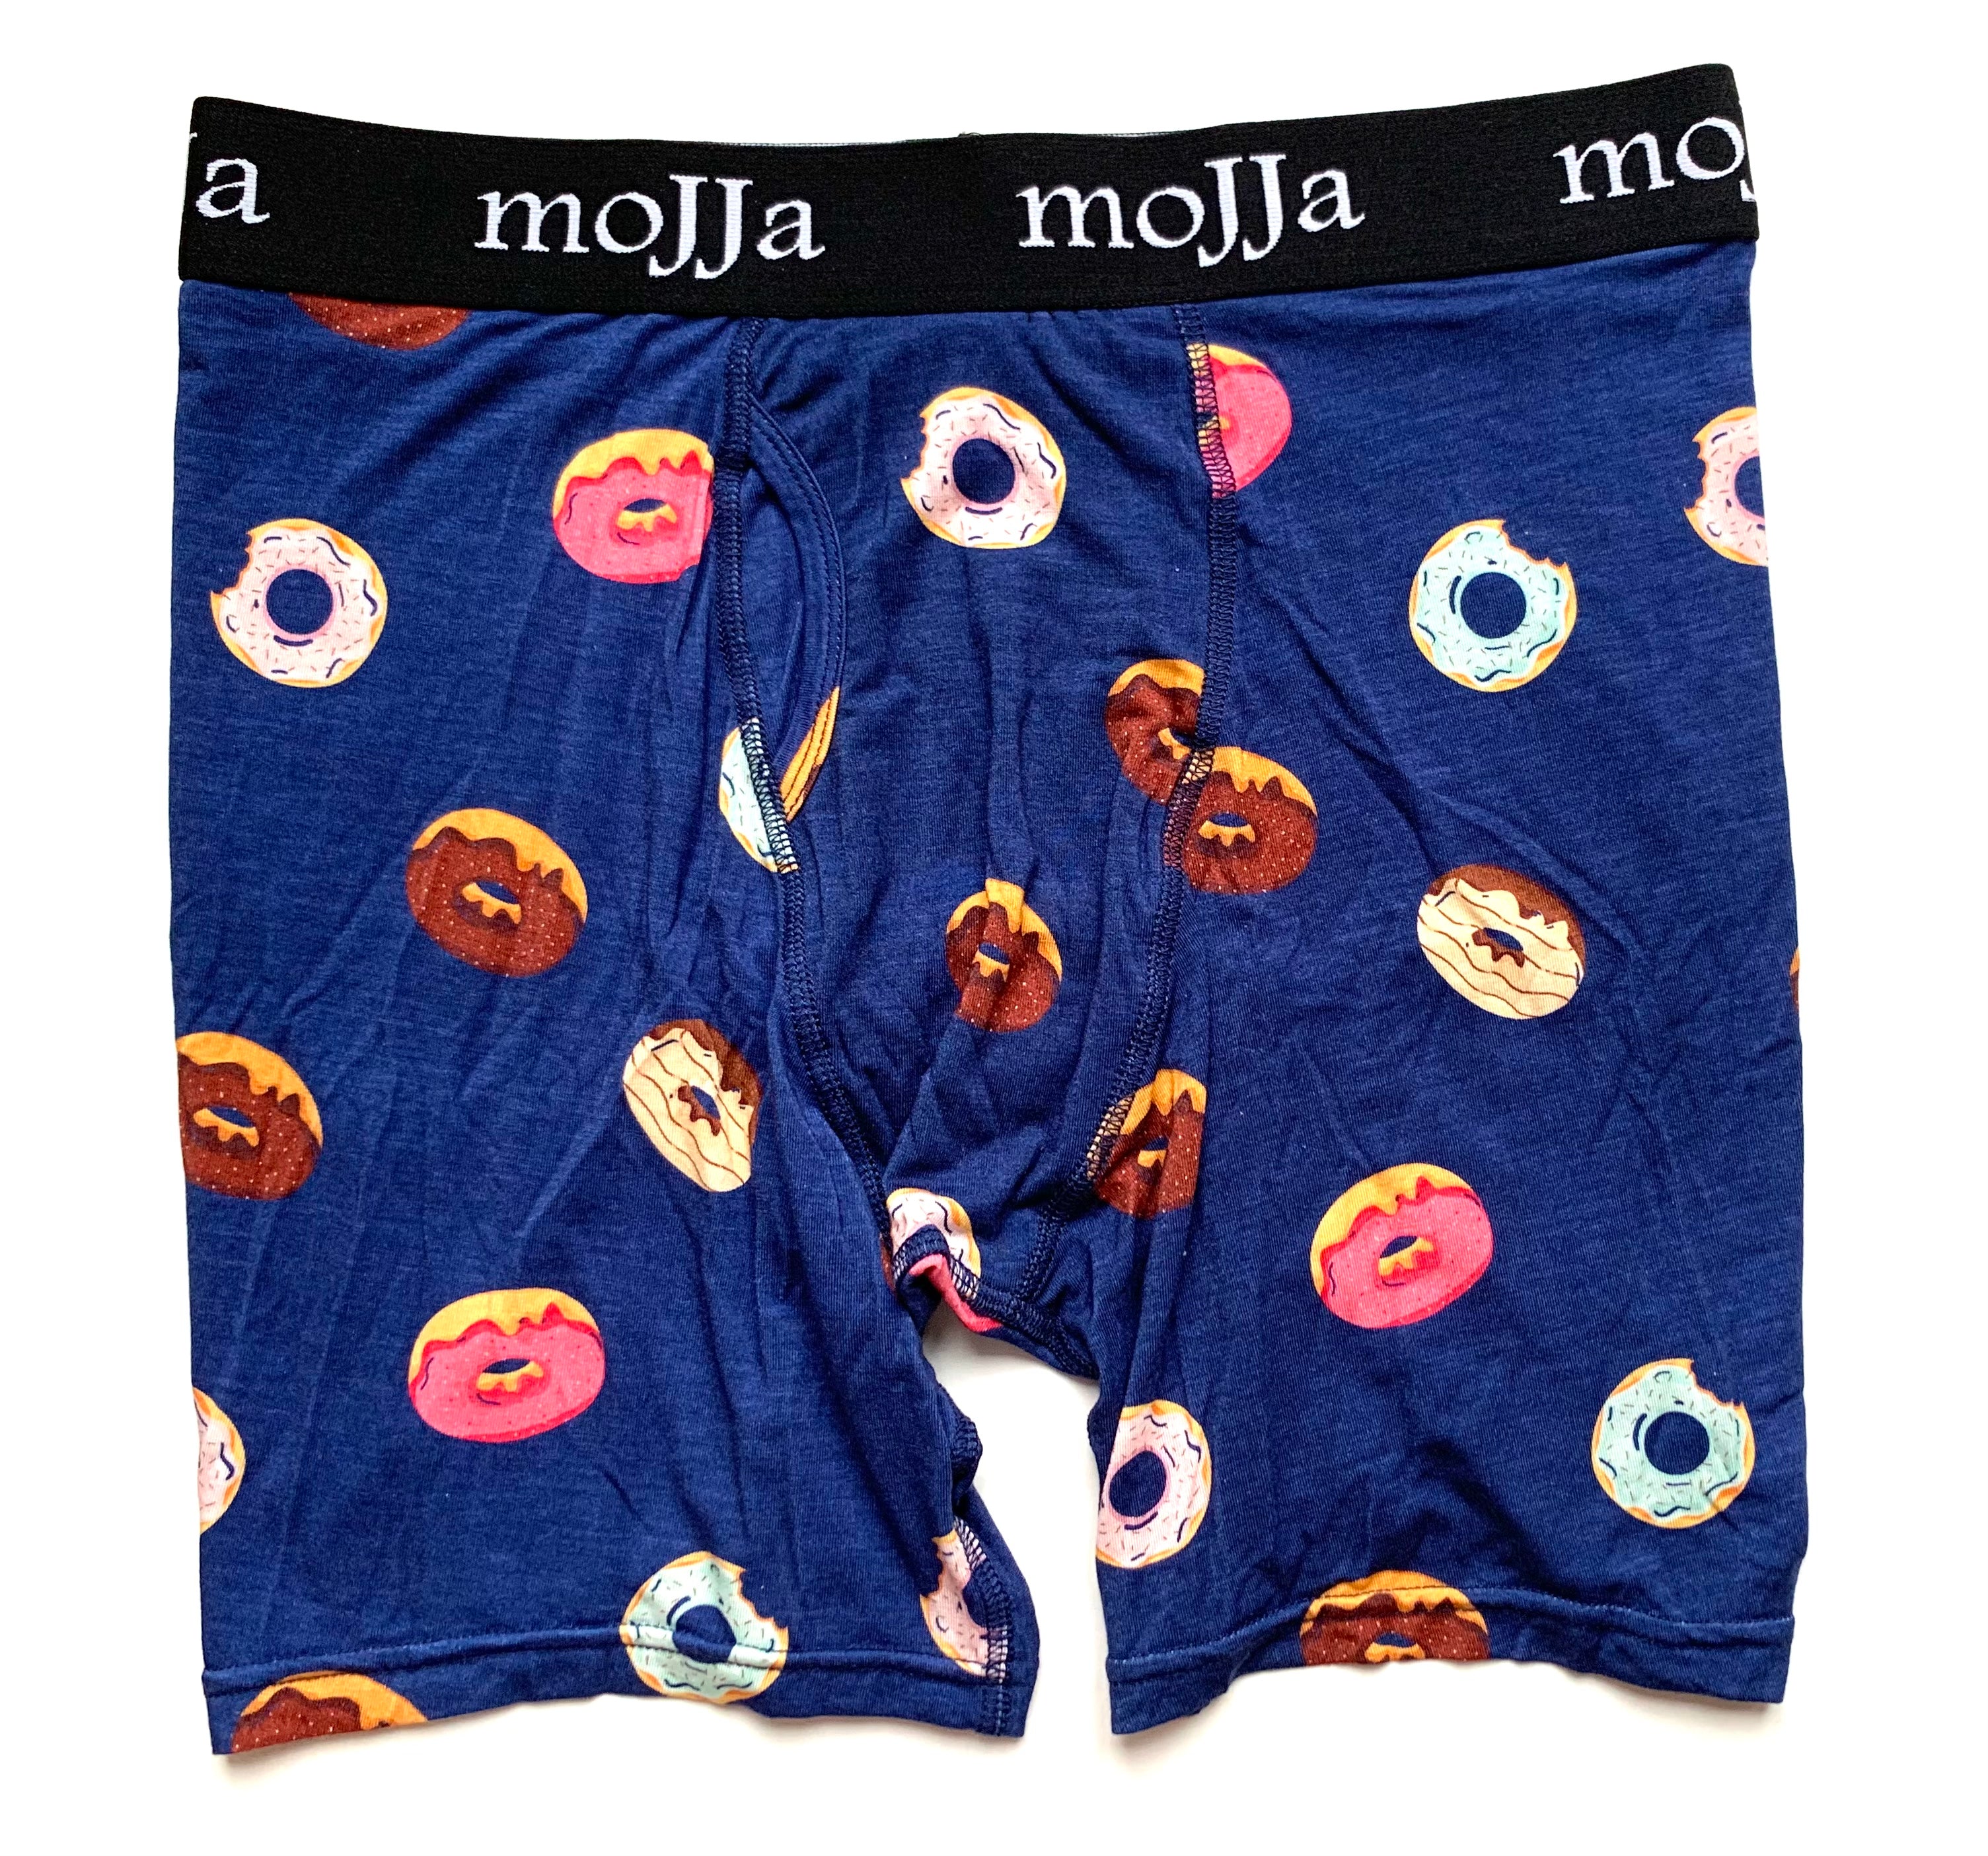 Donut boxer briefs for men